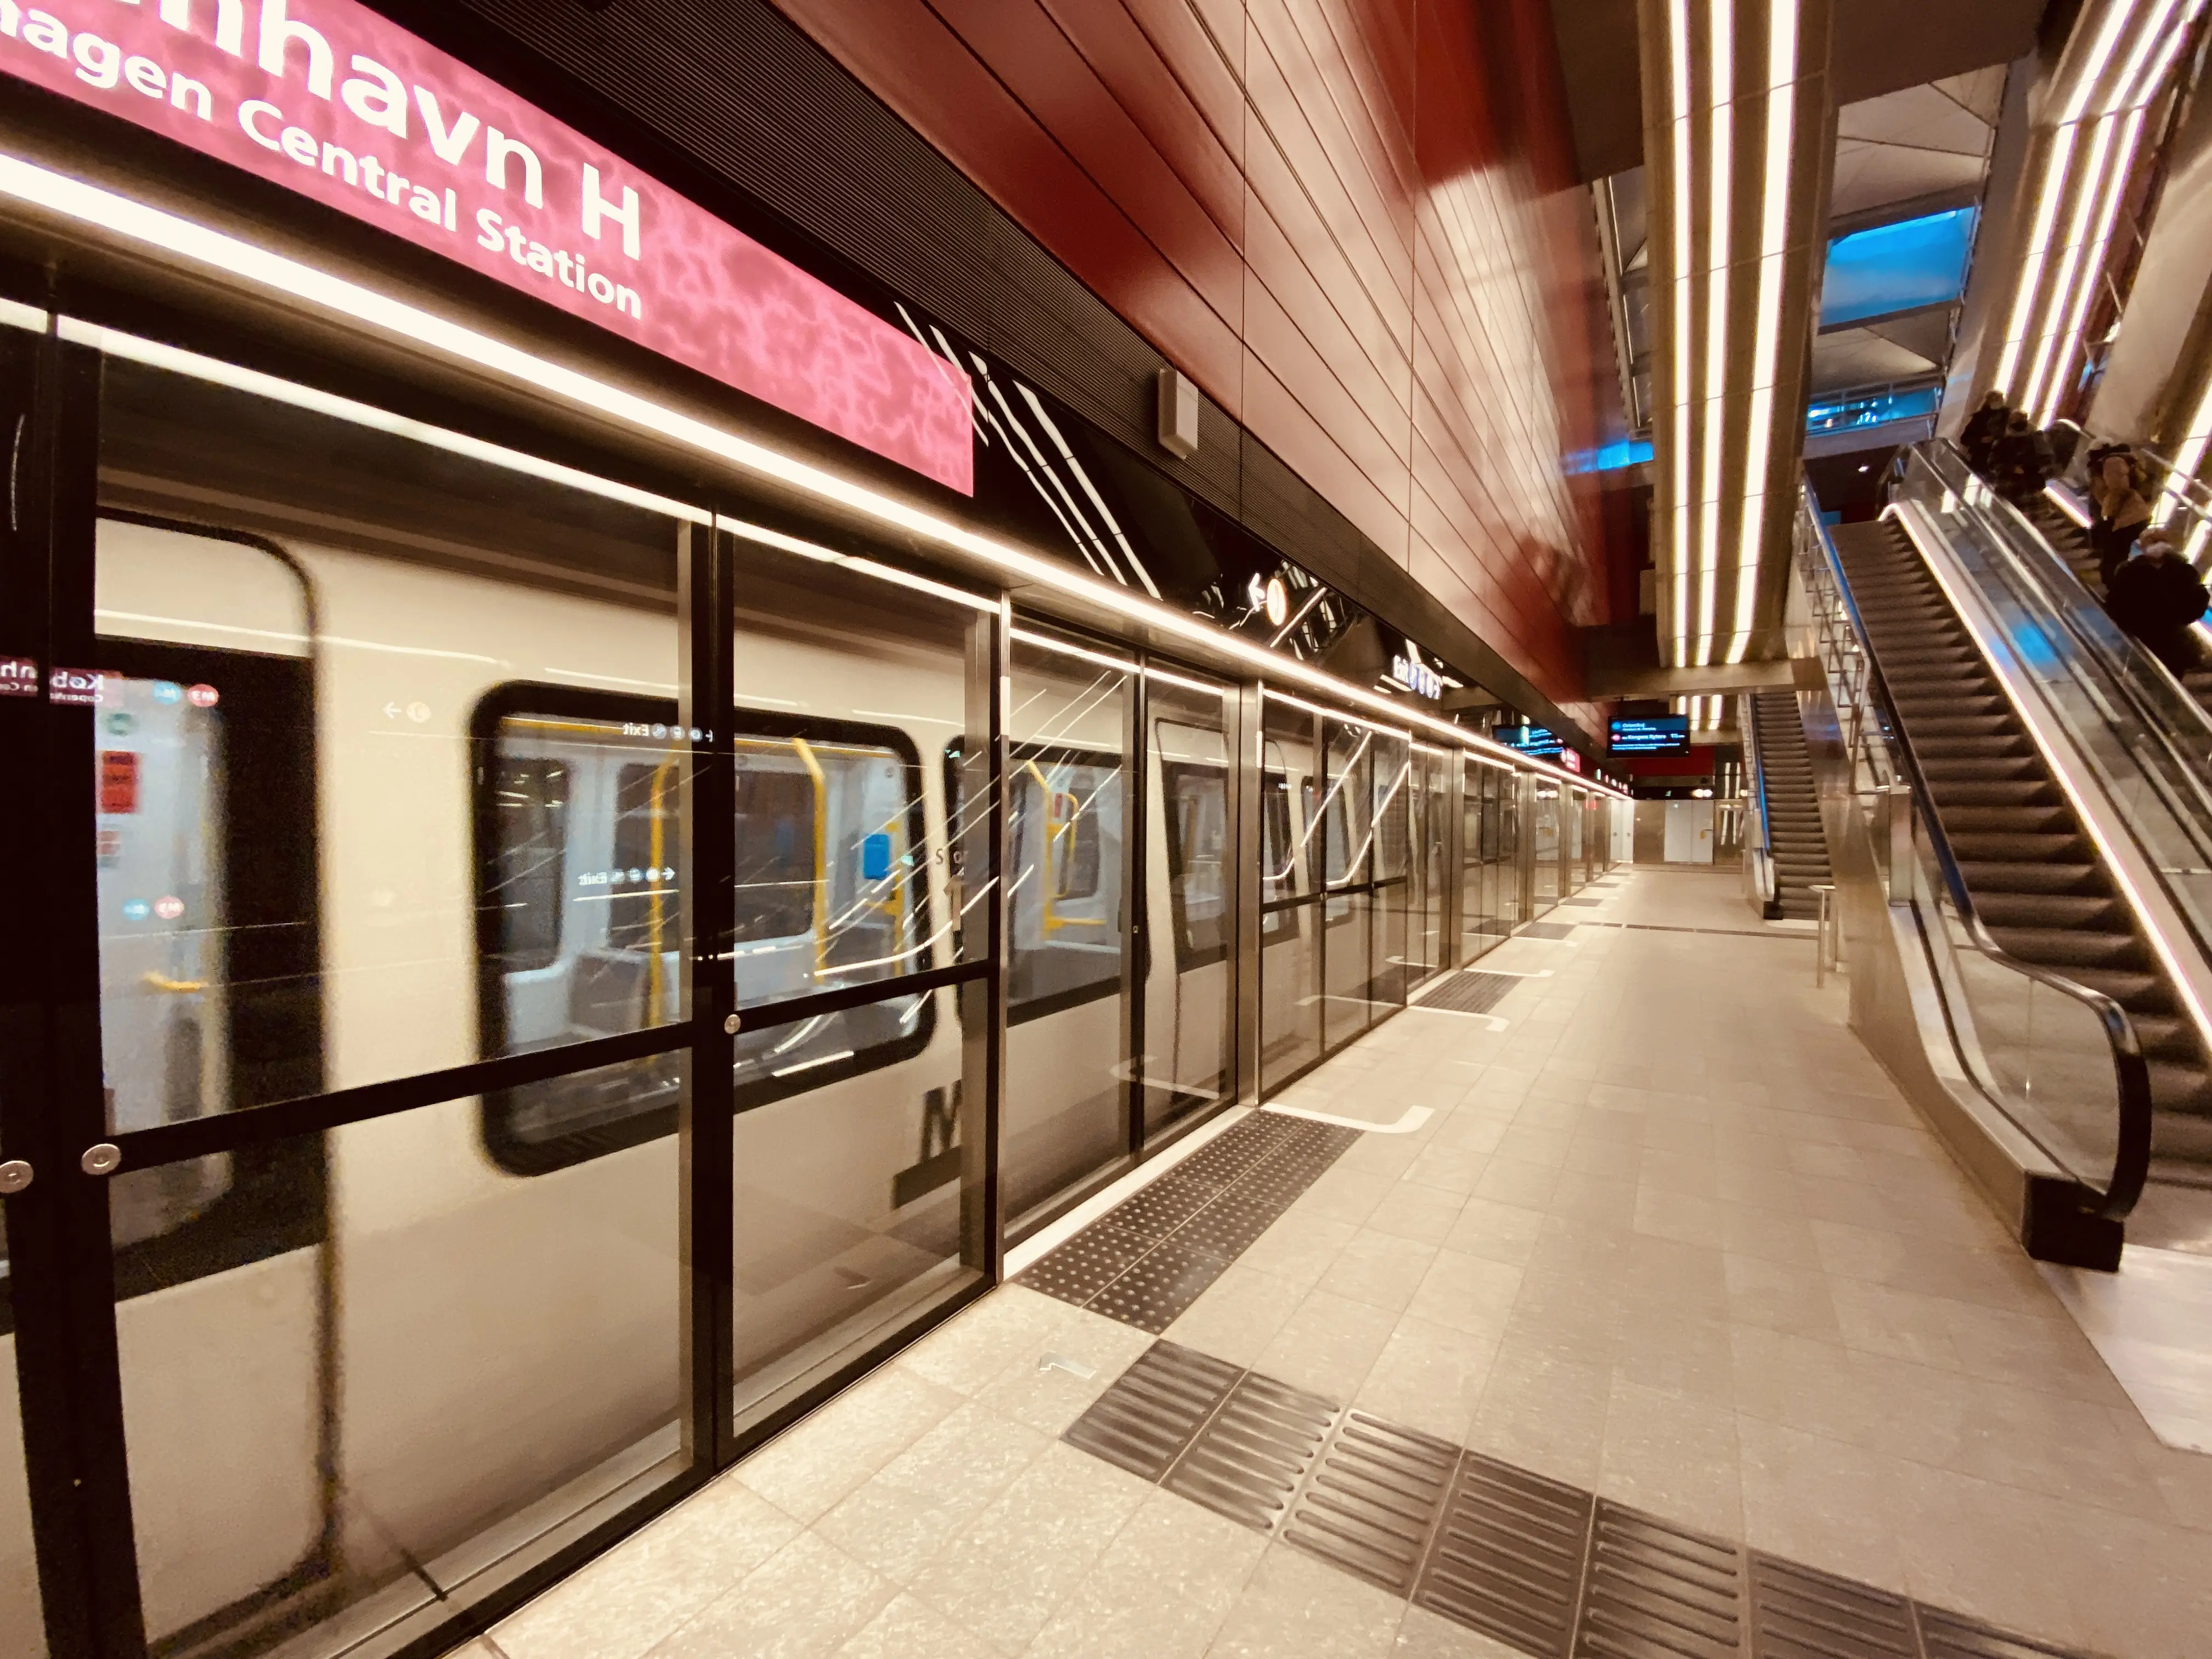 København H Metrostation har en varm og dyb rød farve, der signalerer trafik, transport og transit.